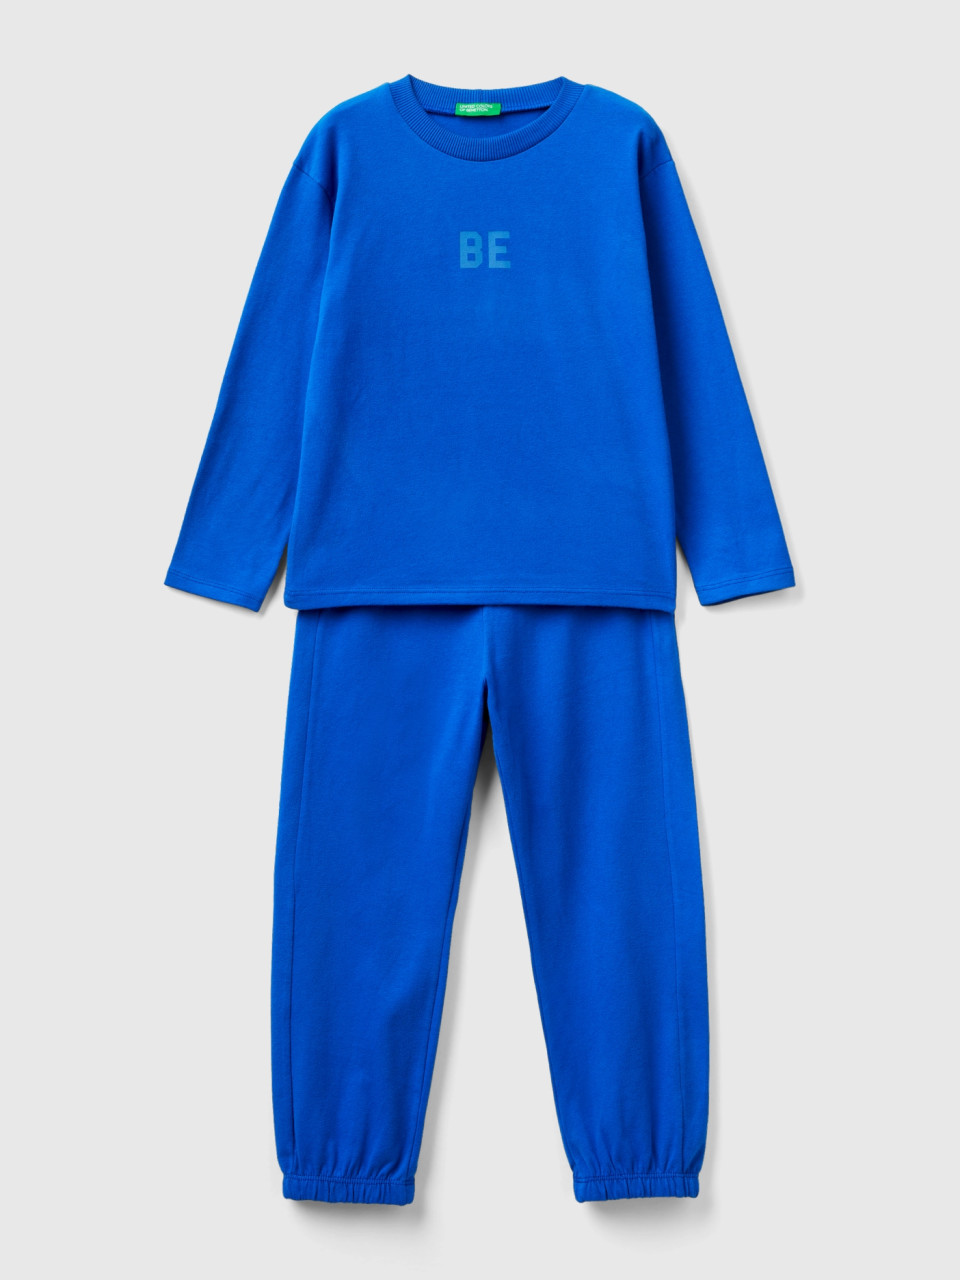 Benetton, Long Pyjamas In Warm Jersey, Bright Blue, Kids